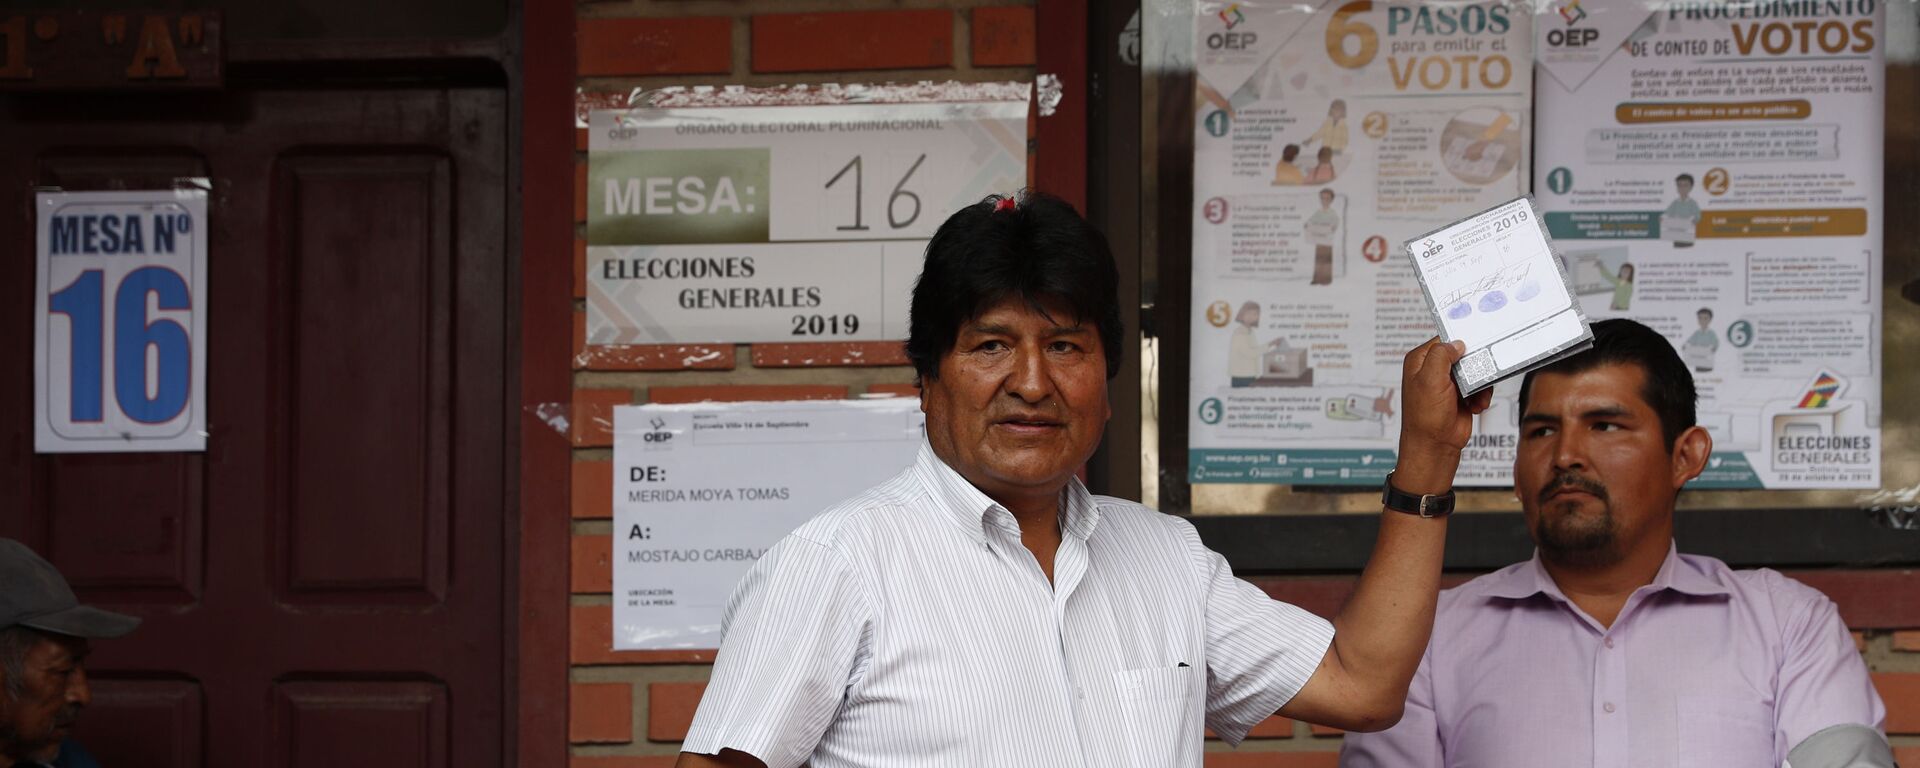 Evo Morales votando durante las elecciones de octubre de 2019 en Bolivia - Sputnik Mundo, 1920, 13.10.2021